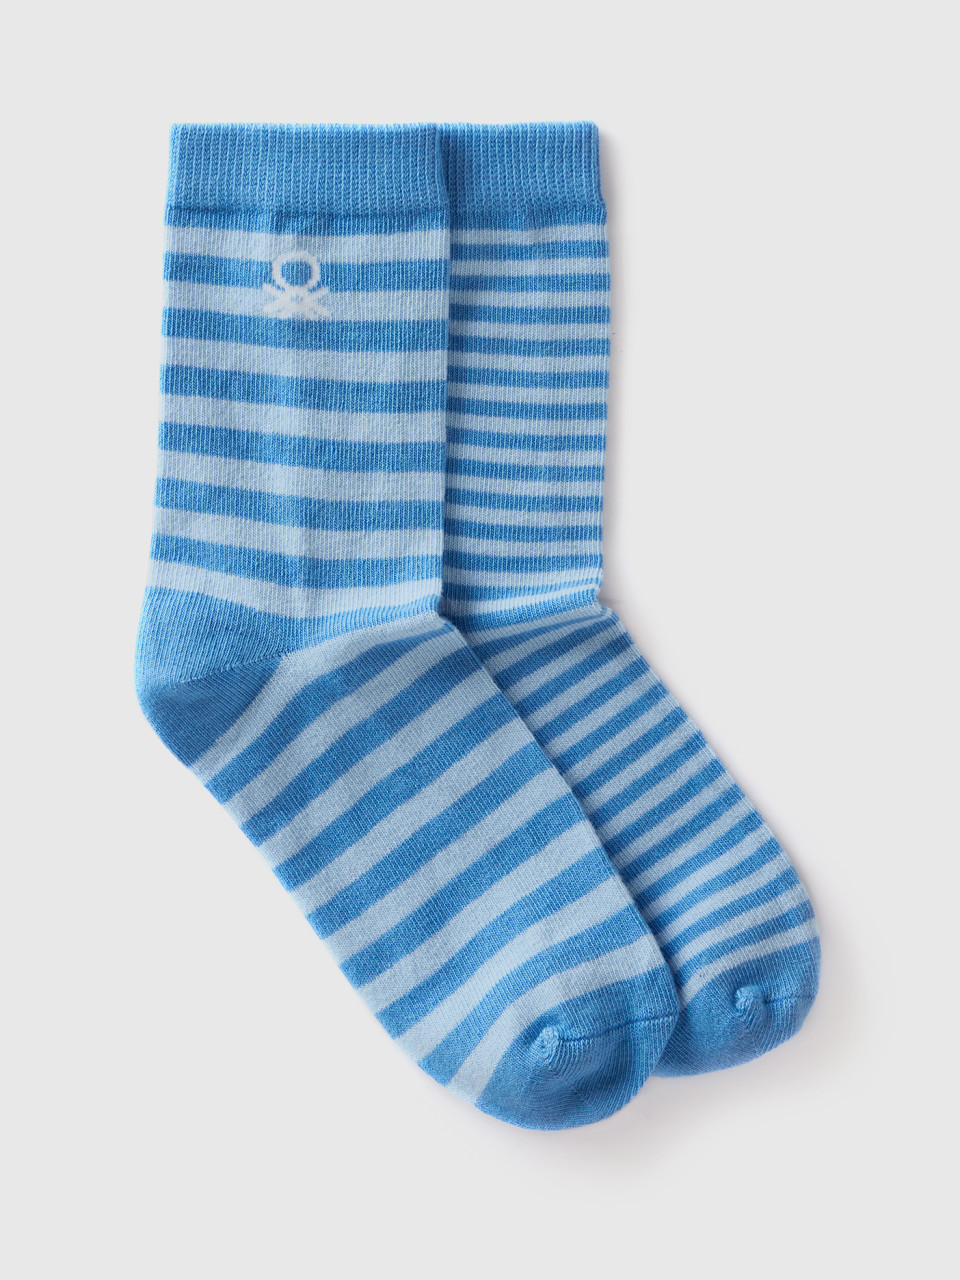 Benetton, Mix & Match Long Striped Socks, Light Blue, Kids